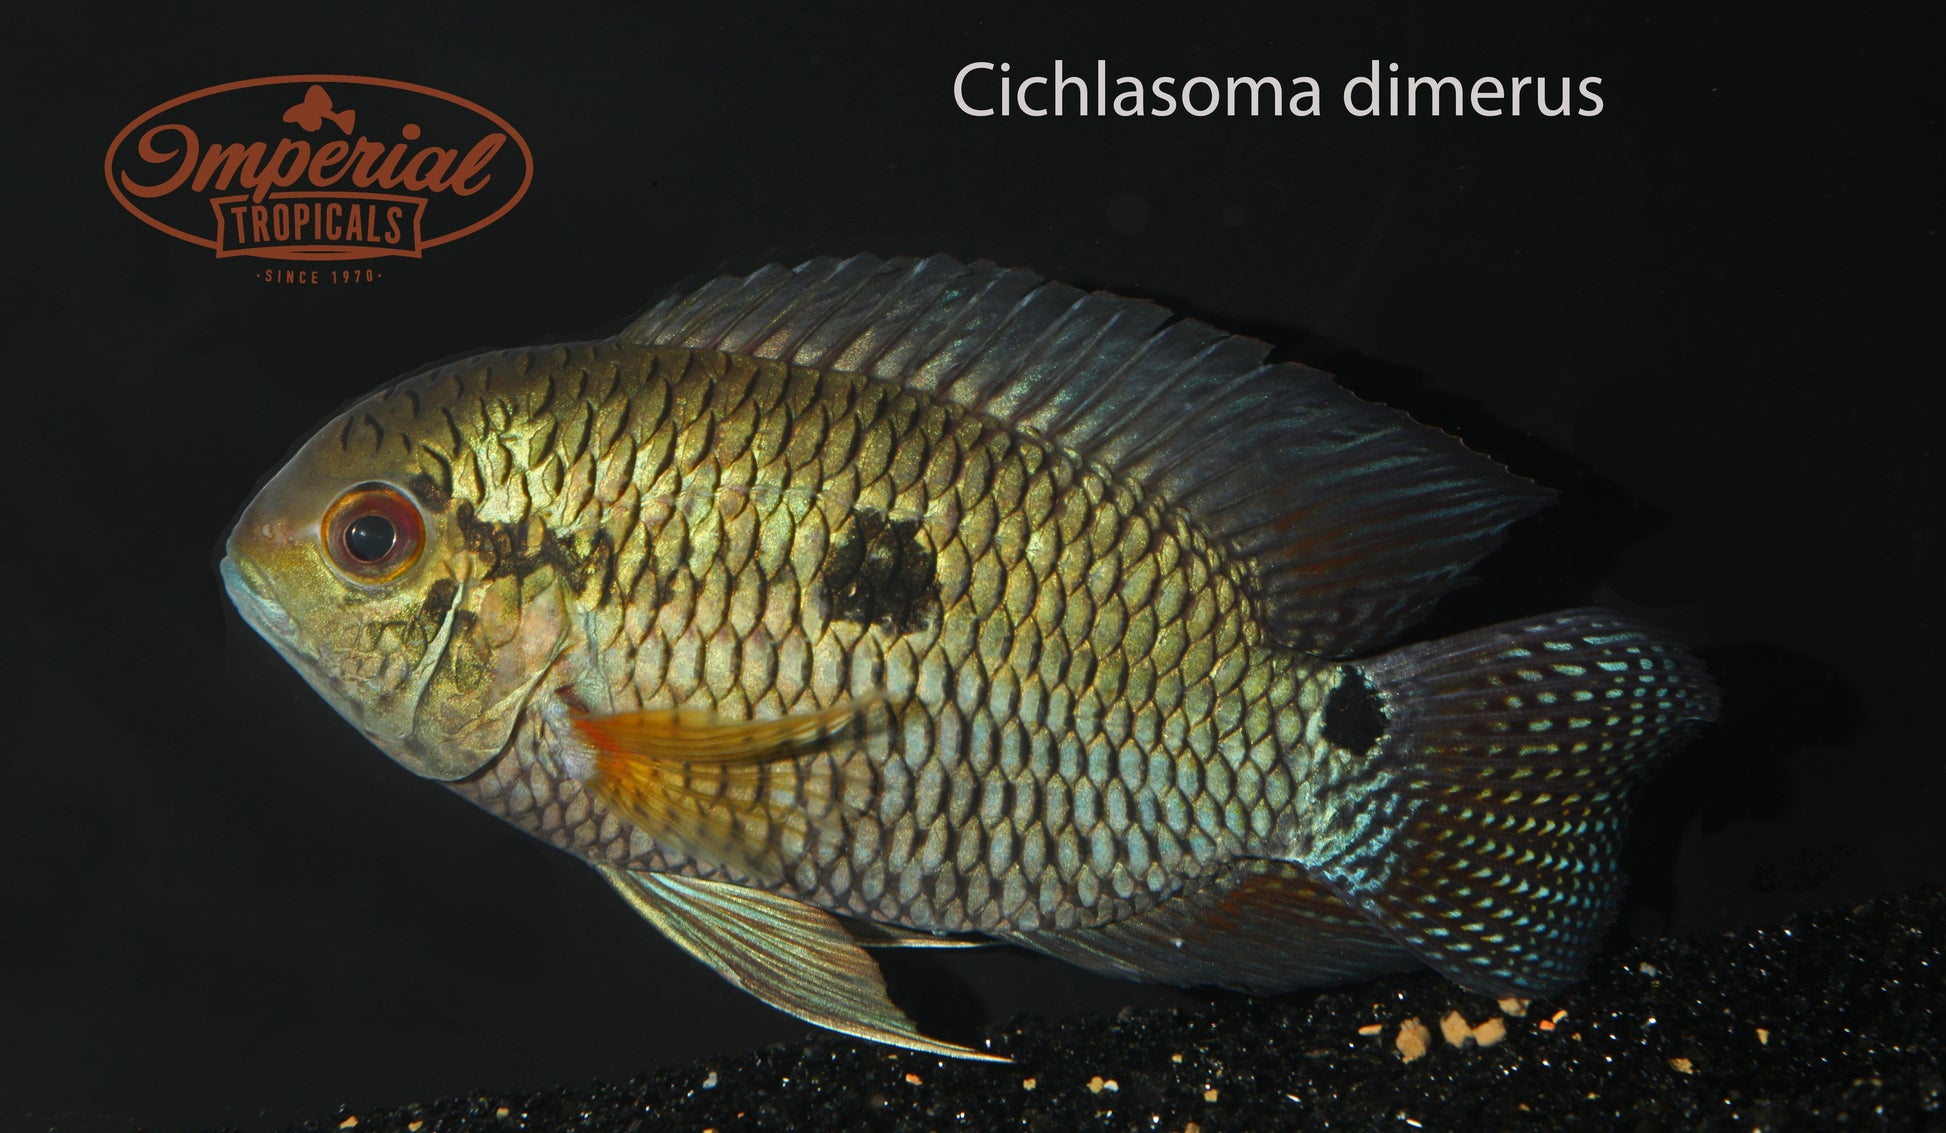 Cichlasoma dimerus - Imperial Tropicals